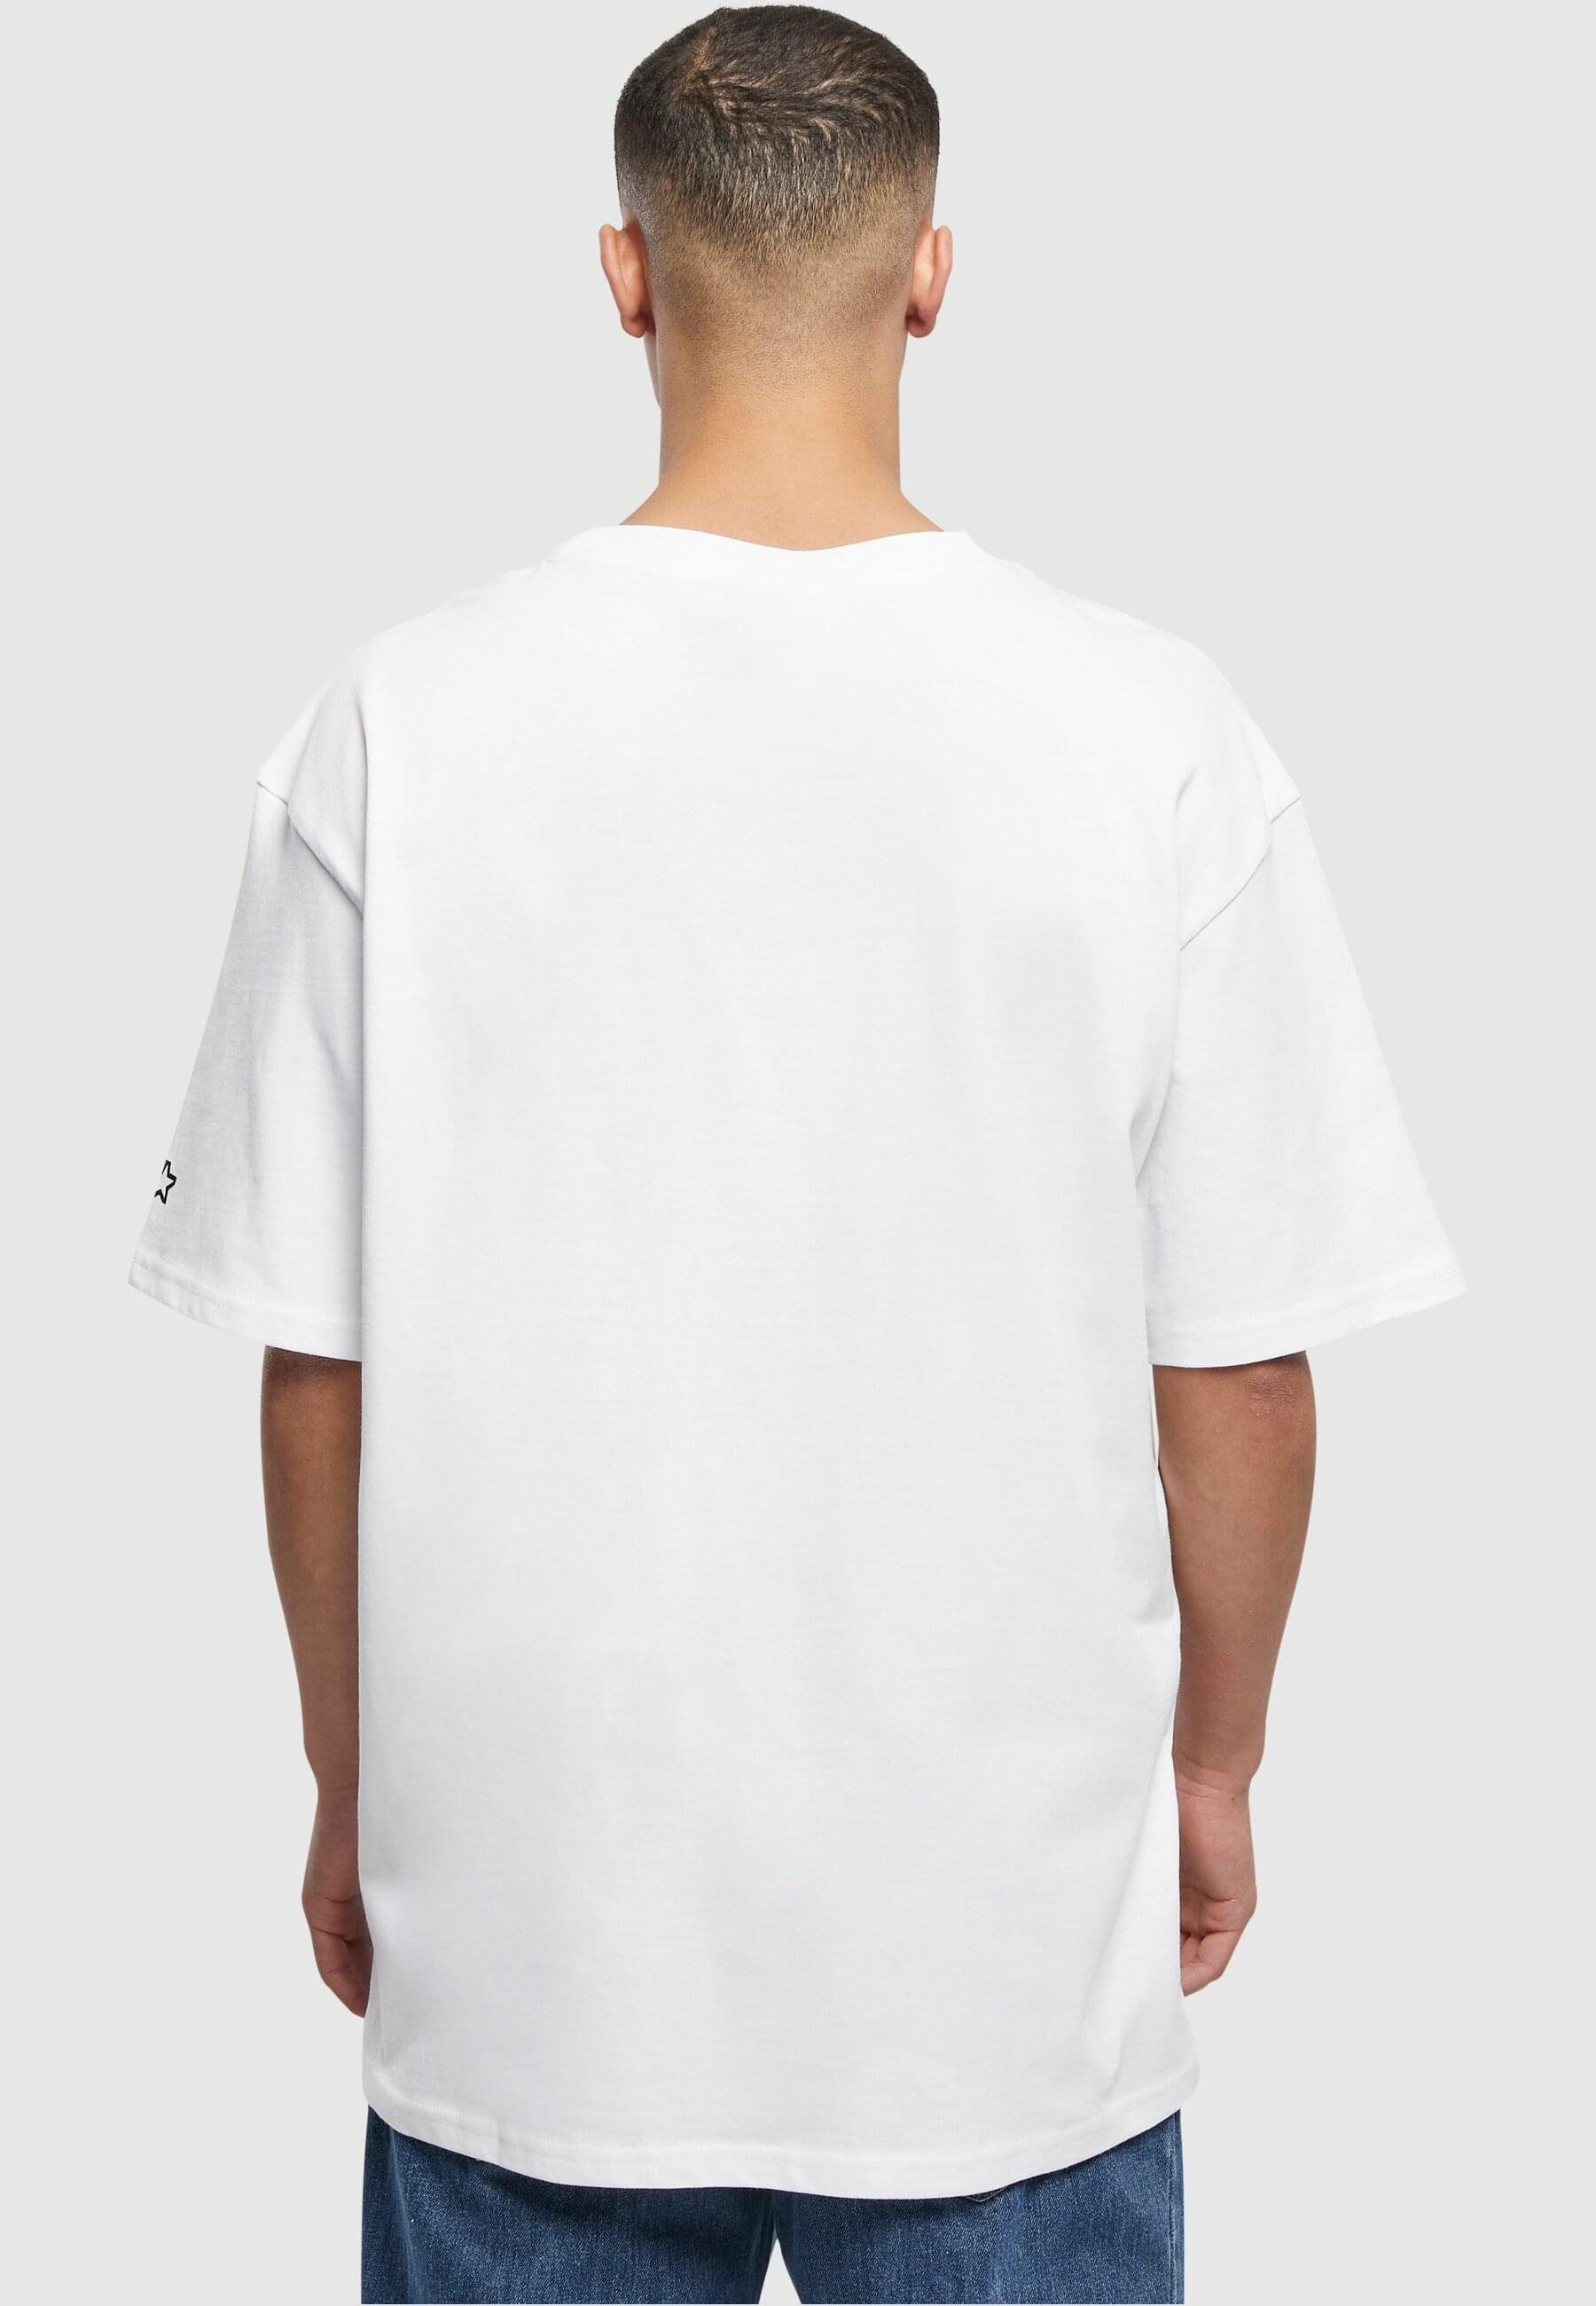 Label Starter Black Palm Herren (1-tlg) white Starter T-Shirt Tee